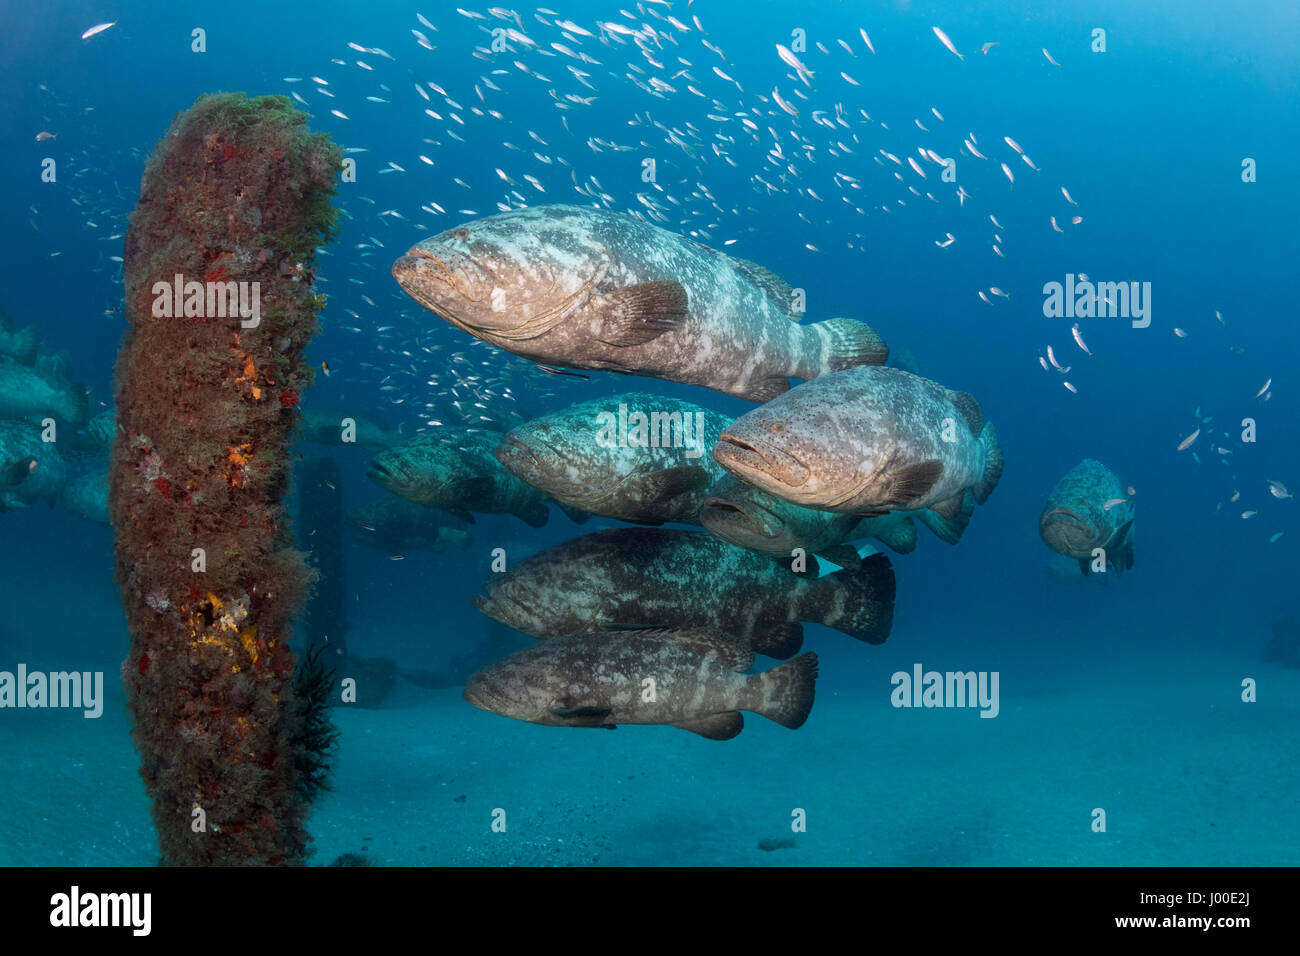 Atlantic goliath grouper Epinephelus itajara or Jewfish spawning aggregation Stock Photo